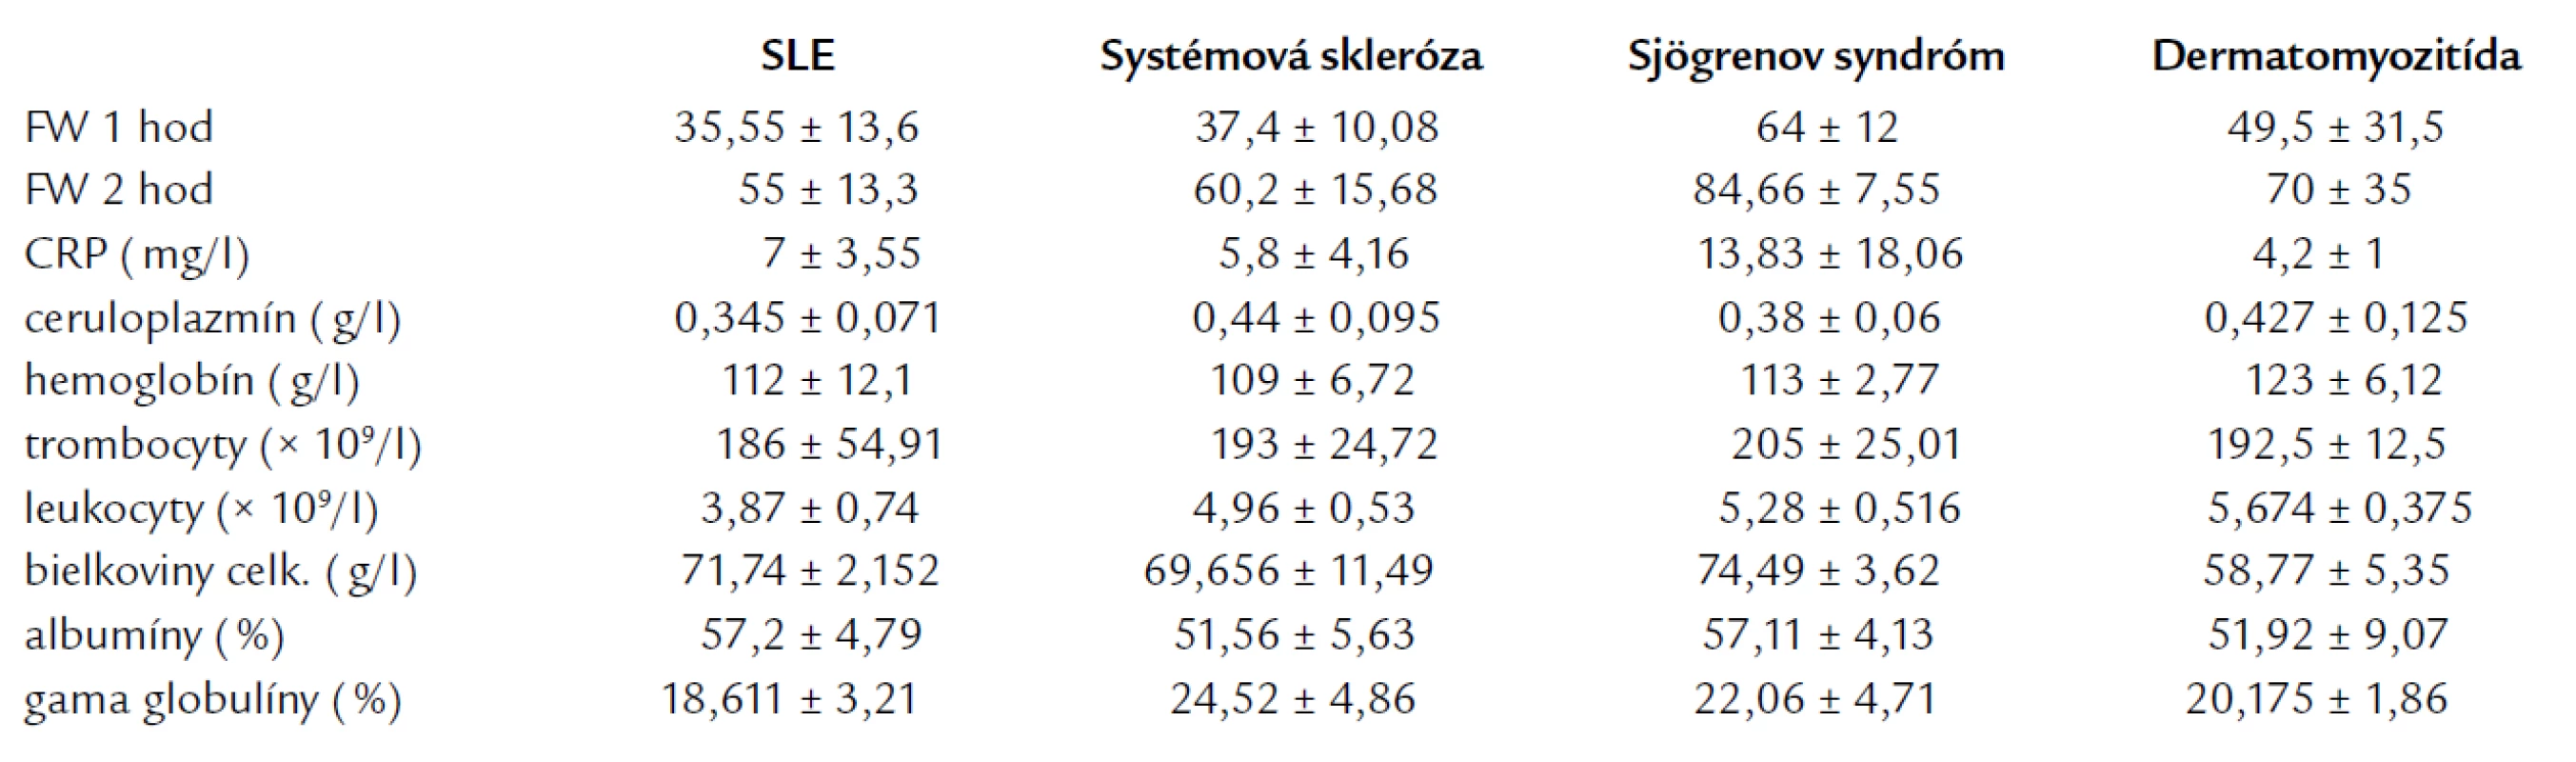 Priemerné hodnoty sledovaných parametrov v jednotlivých skupinách systémových ochorení spojiva.